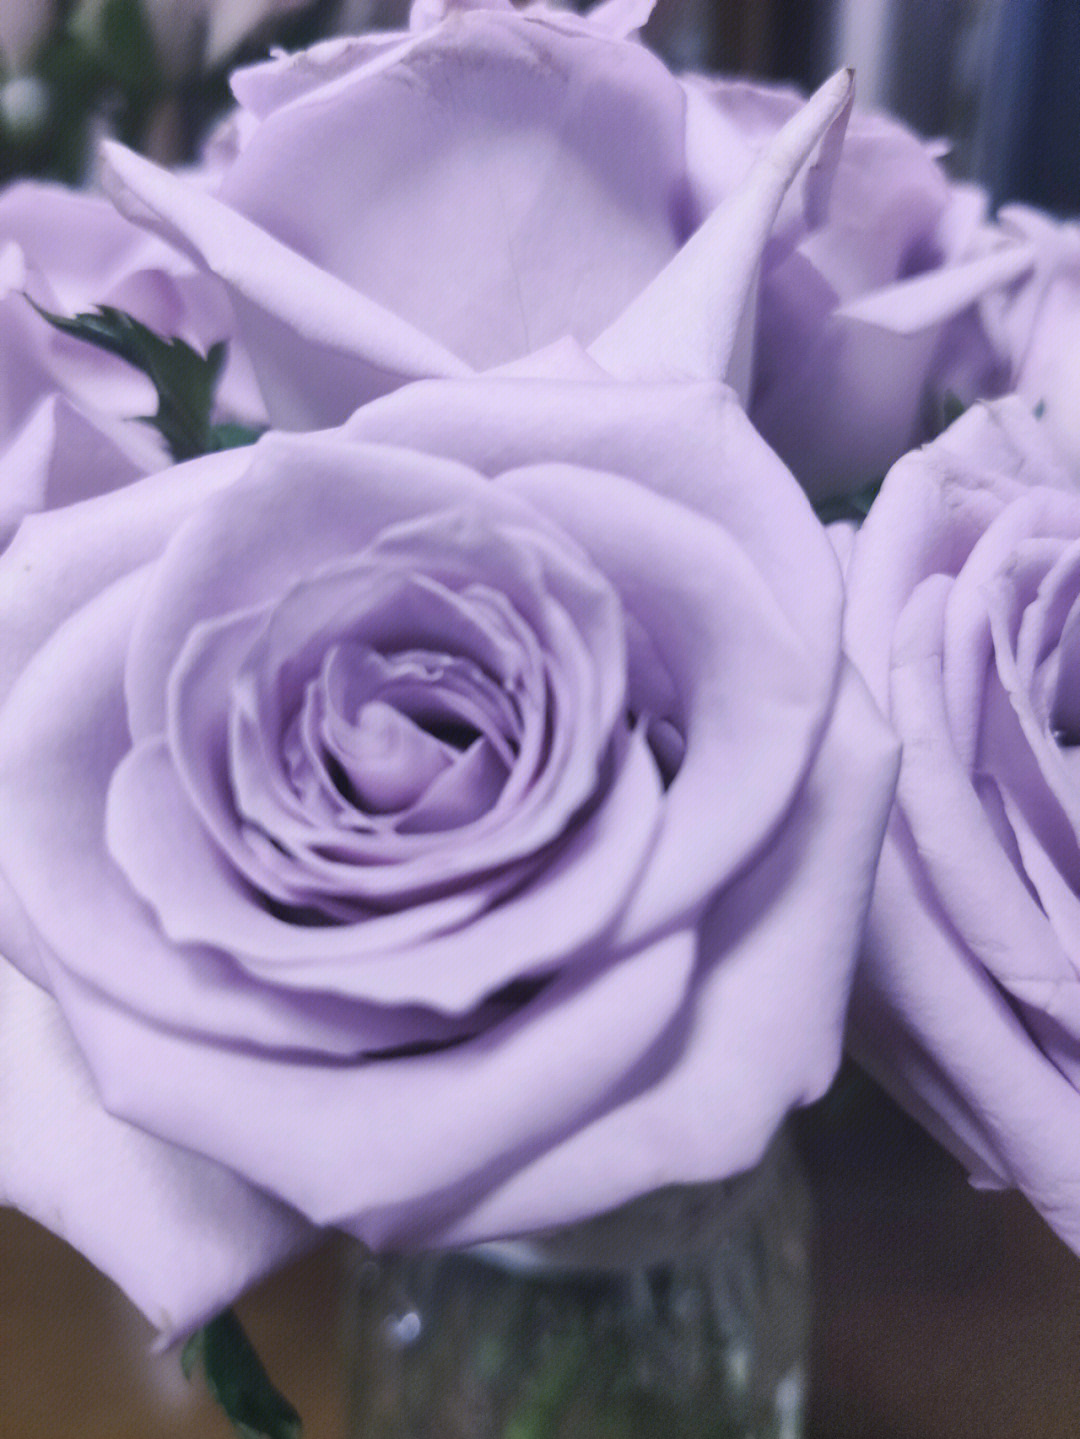 抢到的9920支玫瑰的快乐紫色真好看